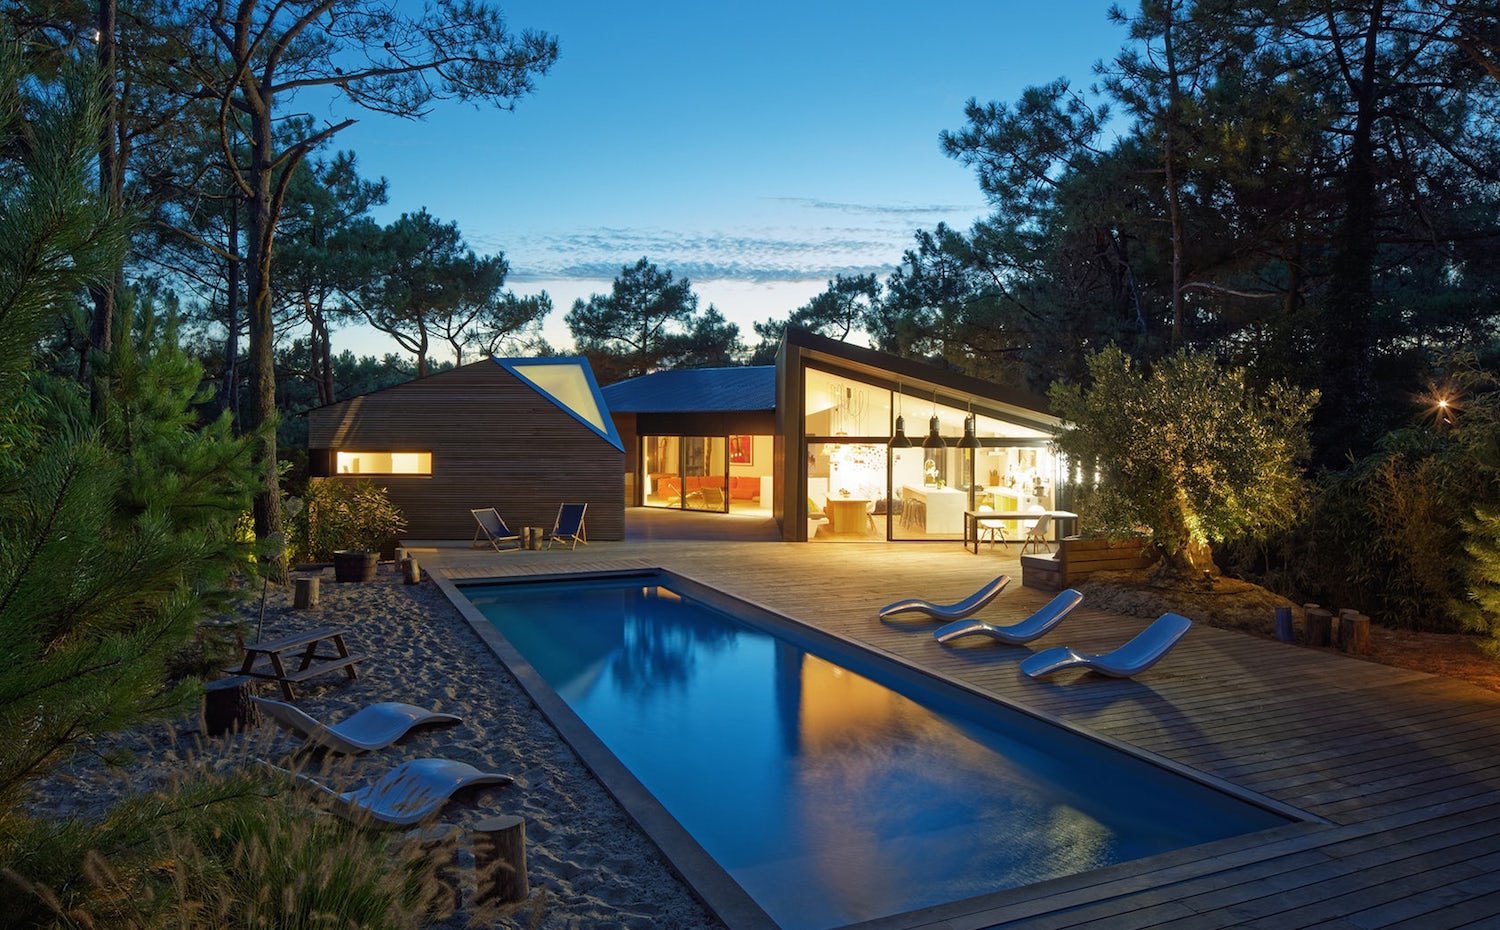 Casa de vacaciones con piscina foto iluminada de noche